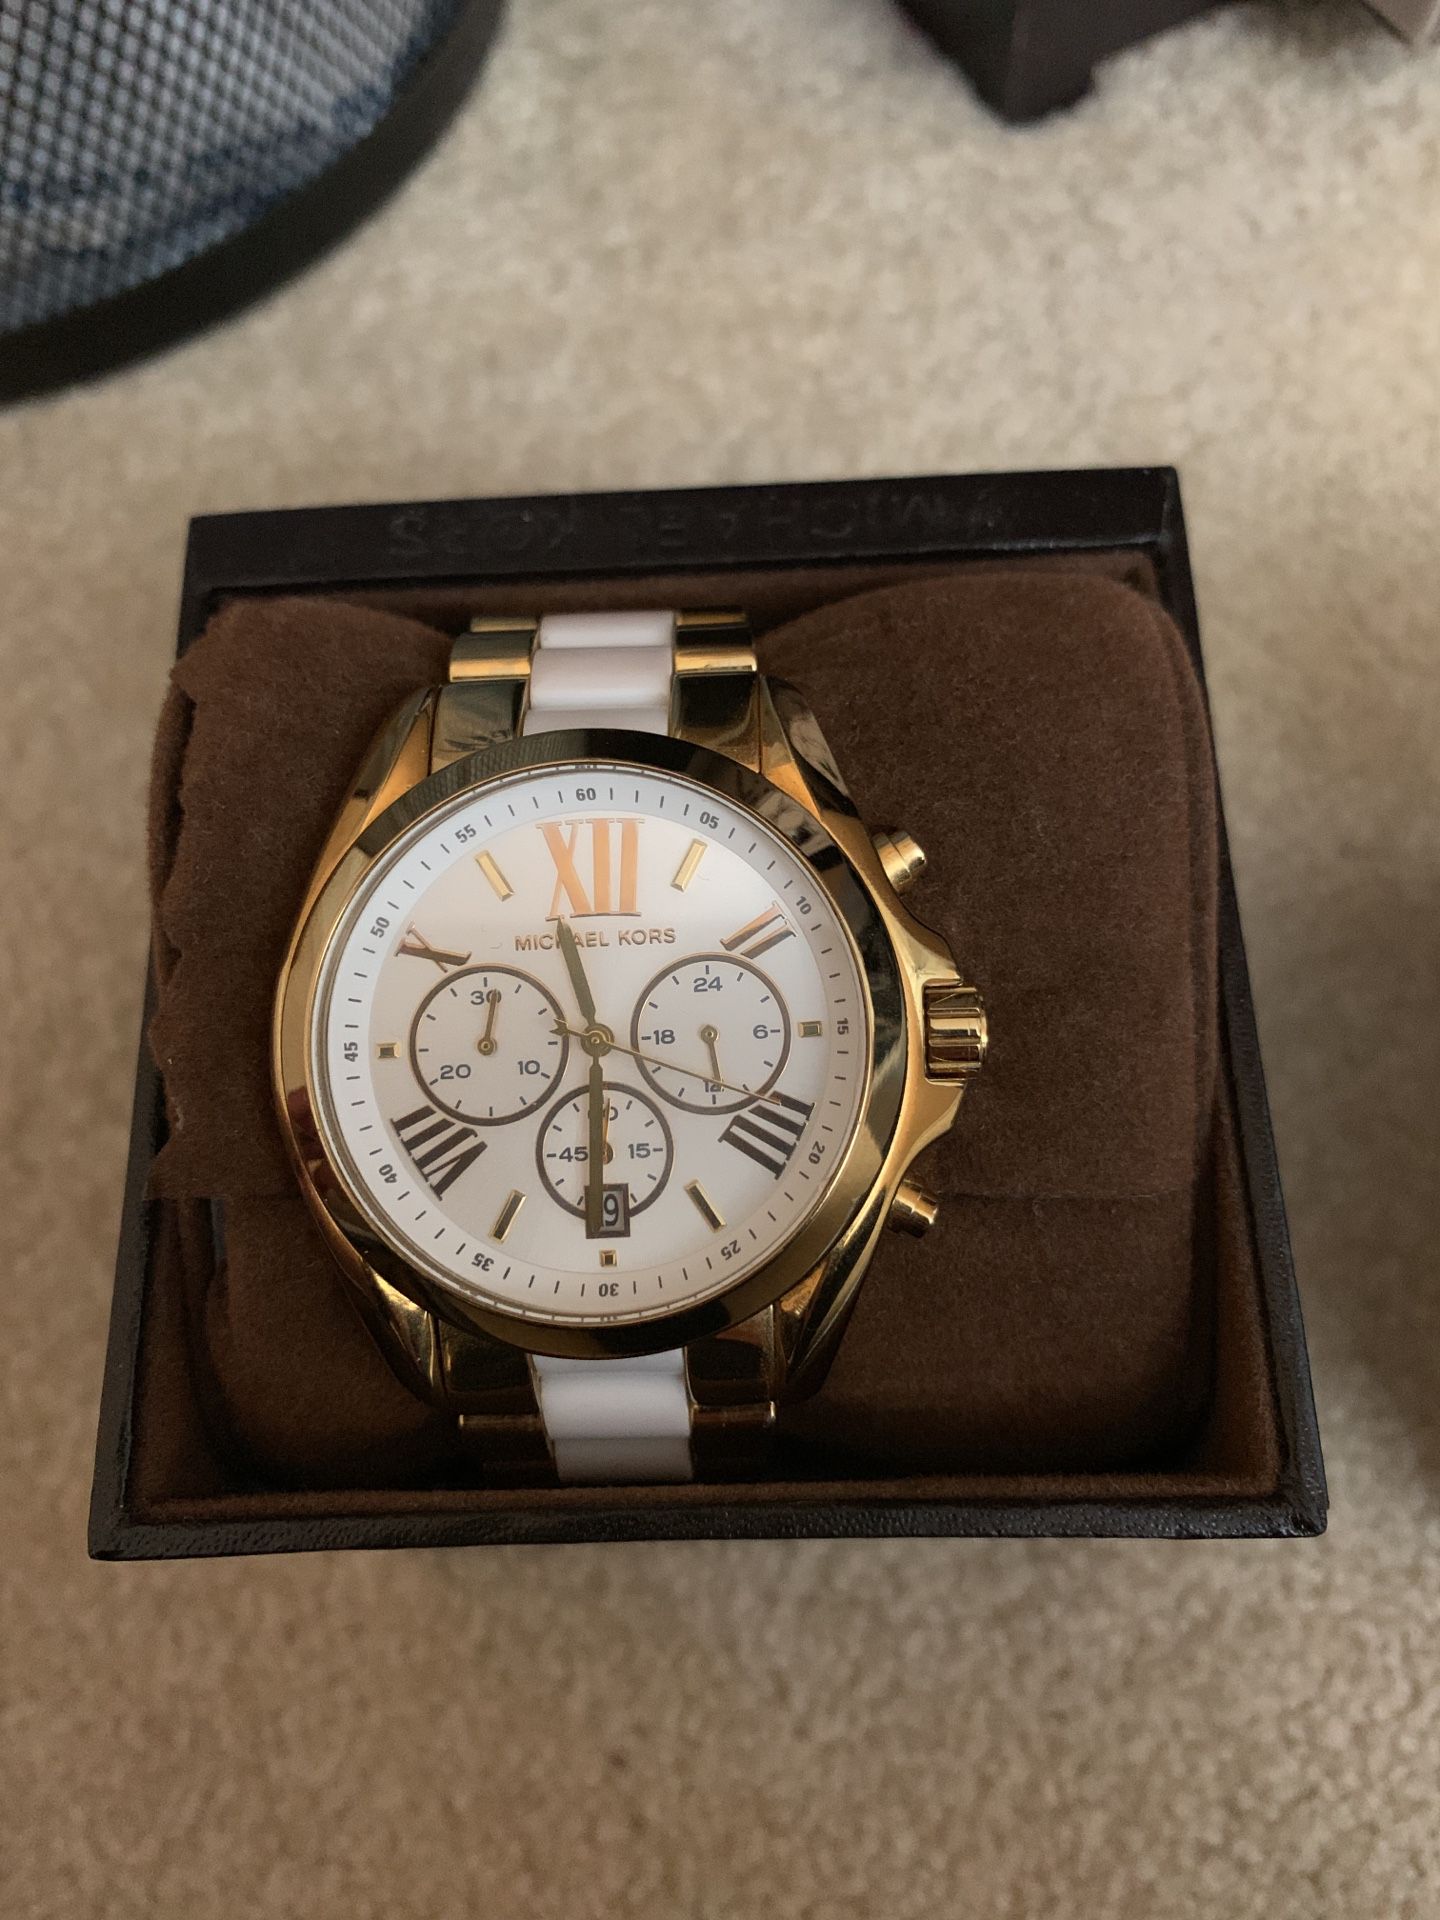 Michael Kors gold watch